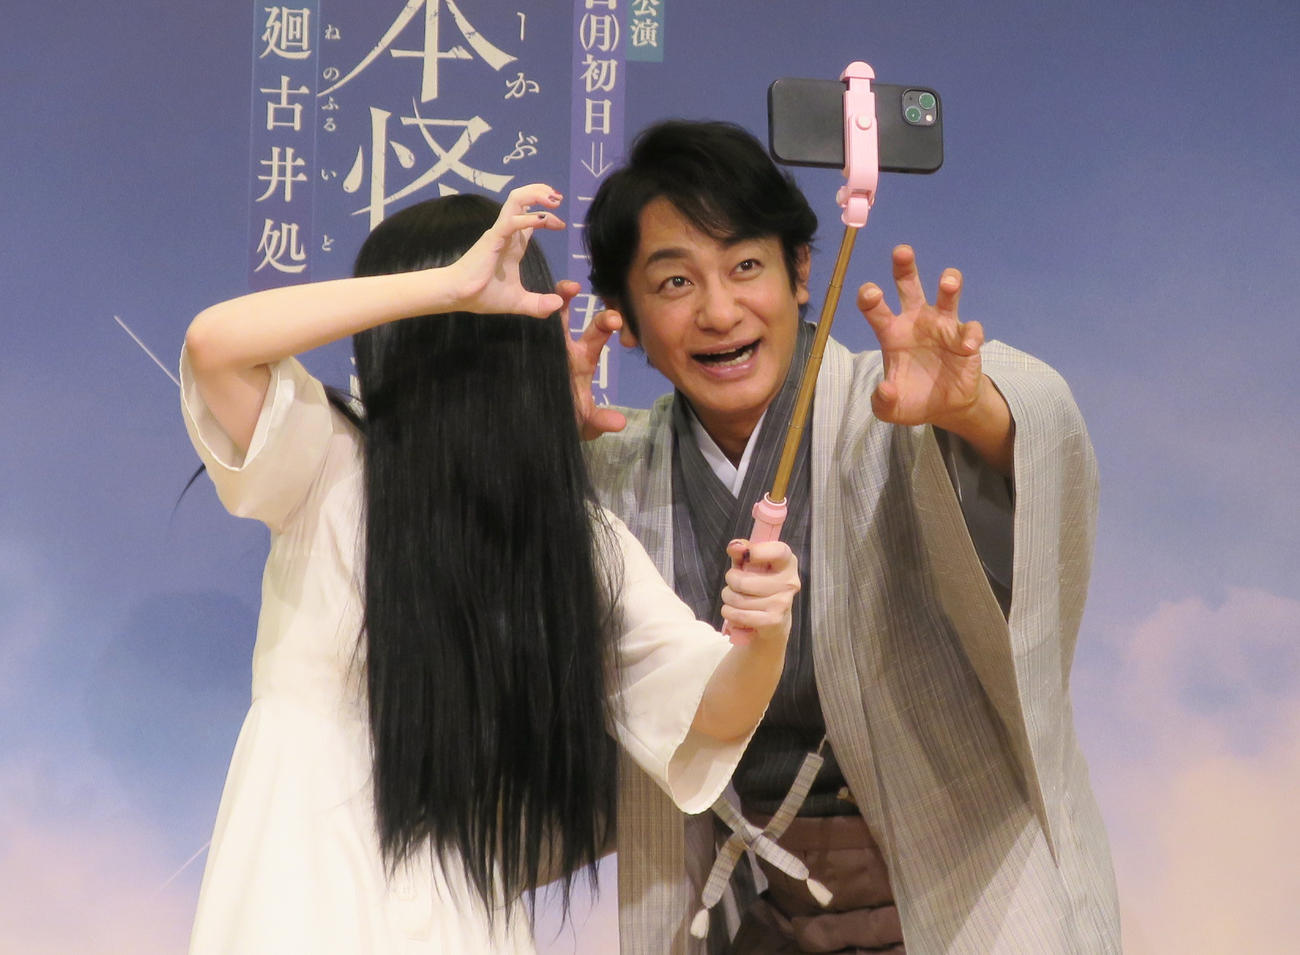 「日本怪談歌舞伎（Jホラーかぶき）貞子×皿屋敷」の制作発表会で。貞子（左）のリクエストで自撮りに応じる片岡愛之助（右）